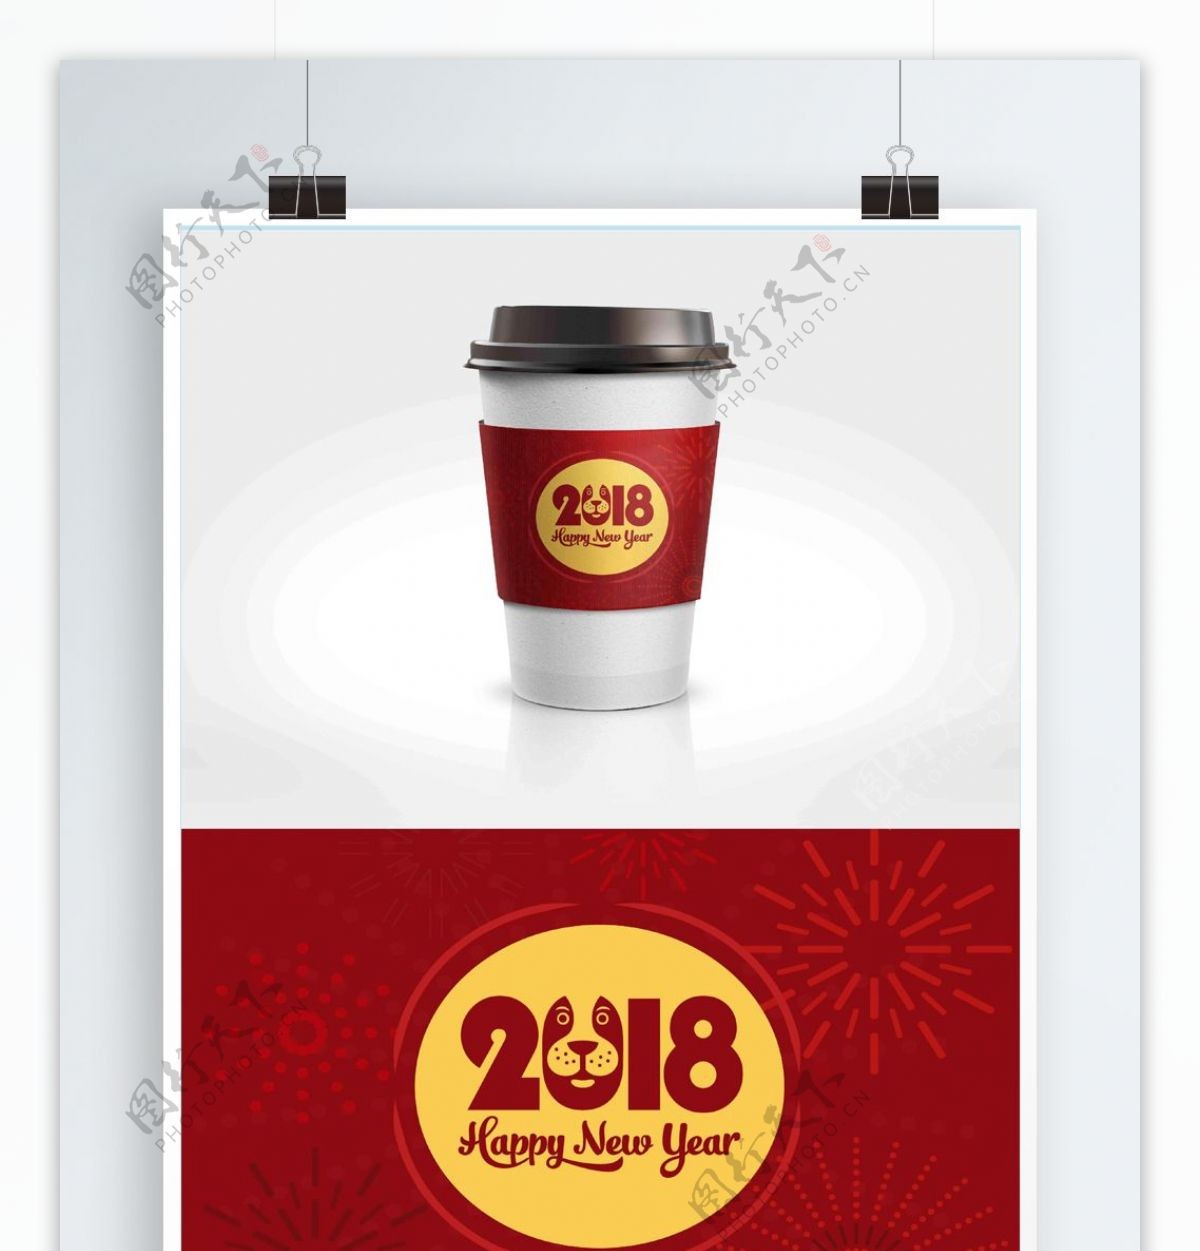 中国红简约大气新年狗年咖啡杯套设计